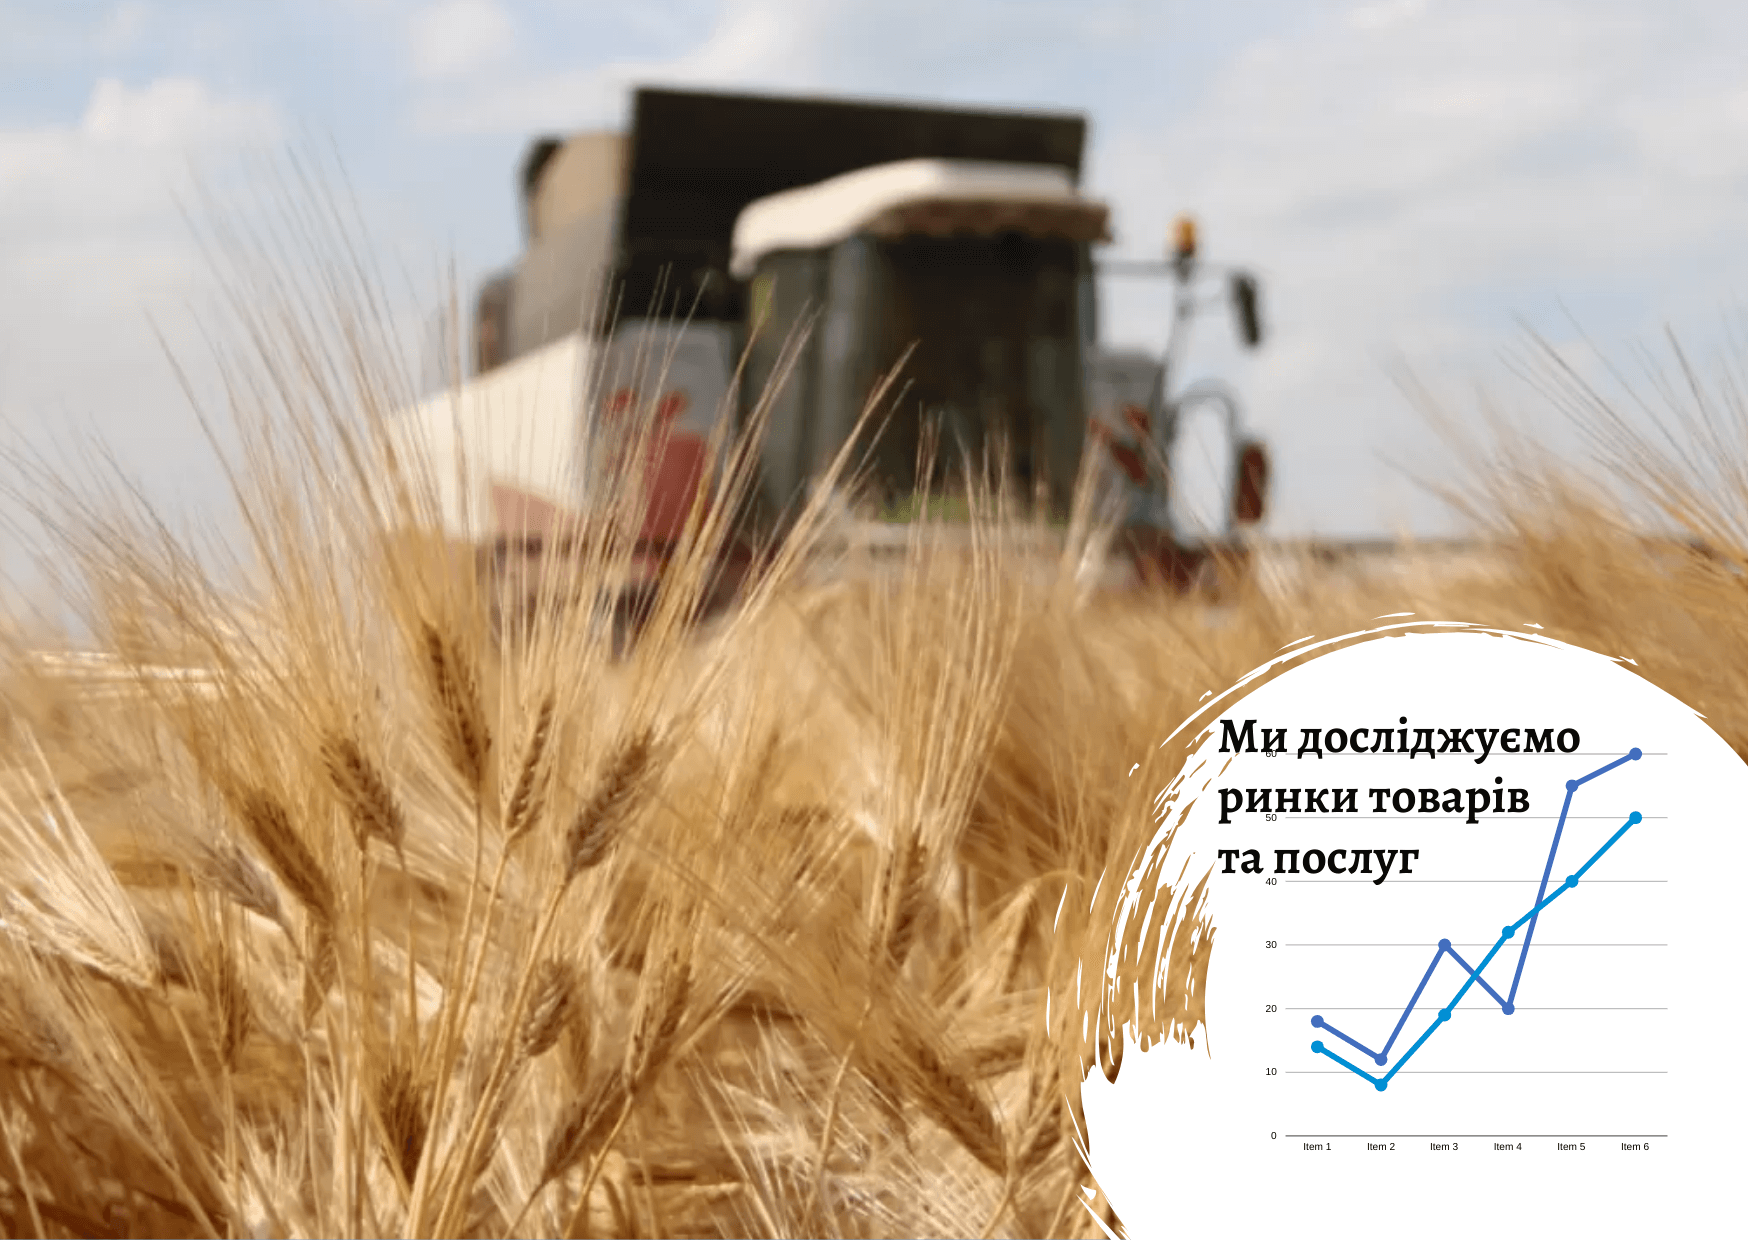    Аграрный рынок в Украине: влияние войны 